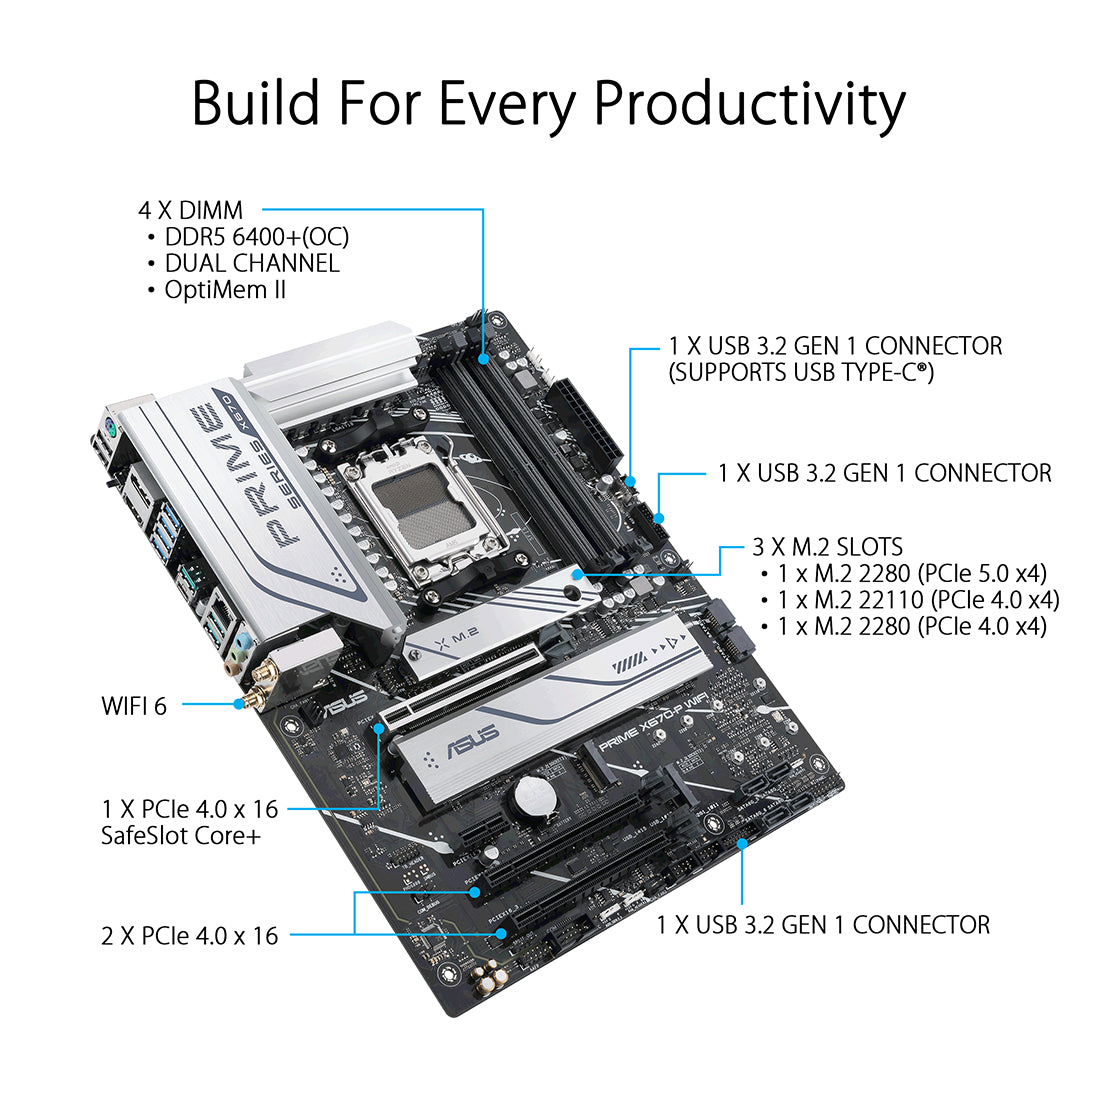 Asus Prime X670-P WIFI AMD सॉकेट AM5 ATX मदरबोर्ड PCIe 5.0 USB 4 हैडर और तीन M.2 स्लॉट के साथ